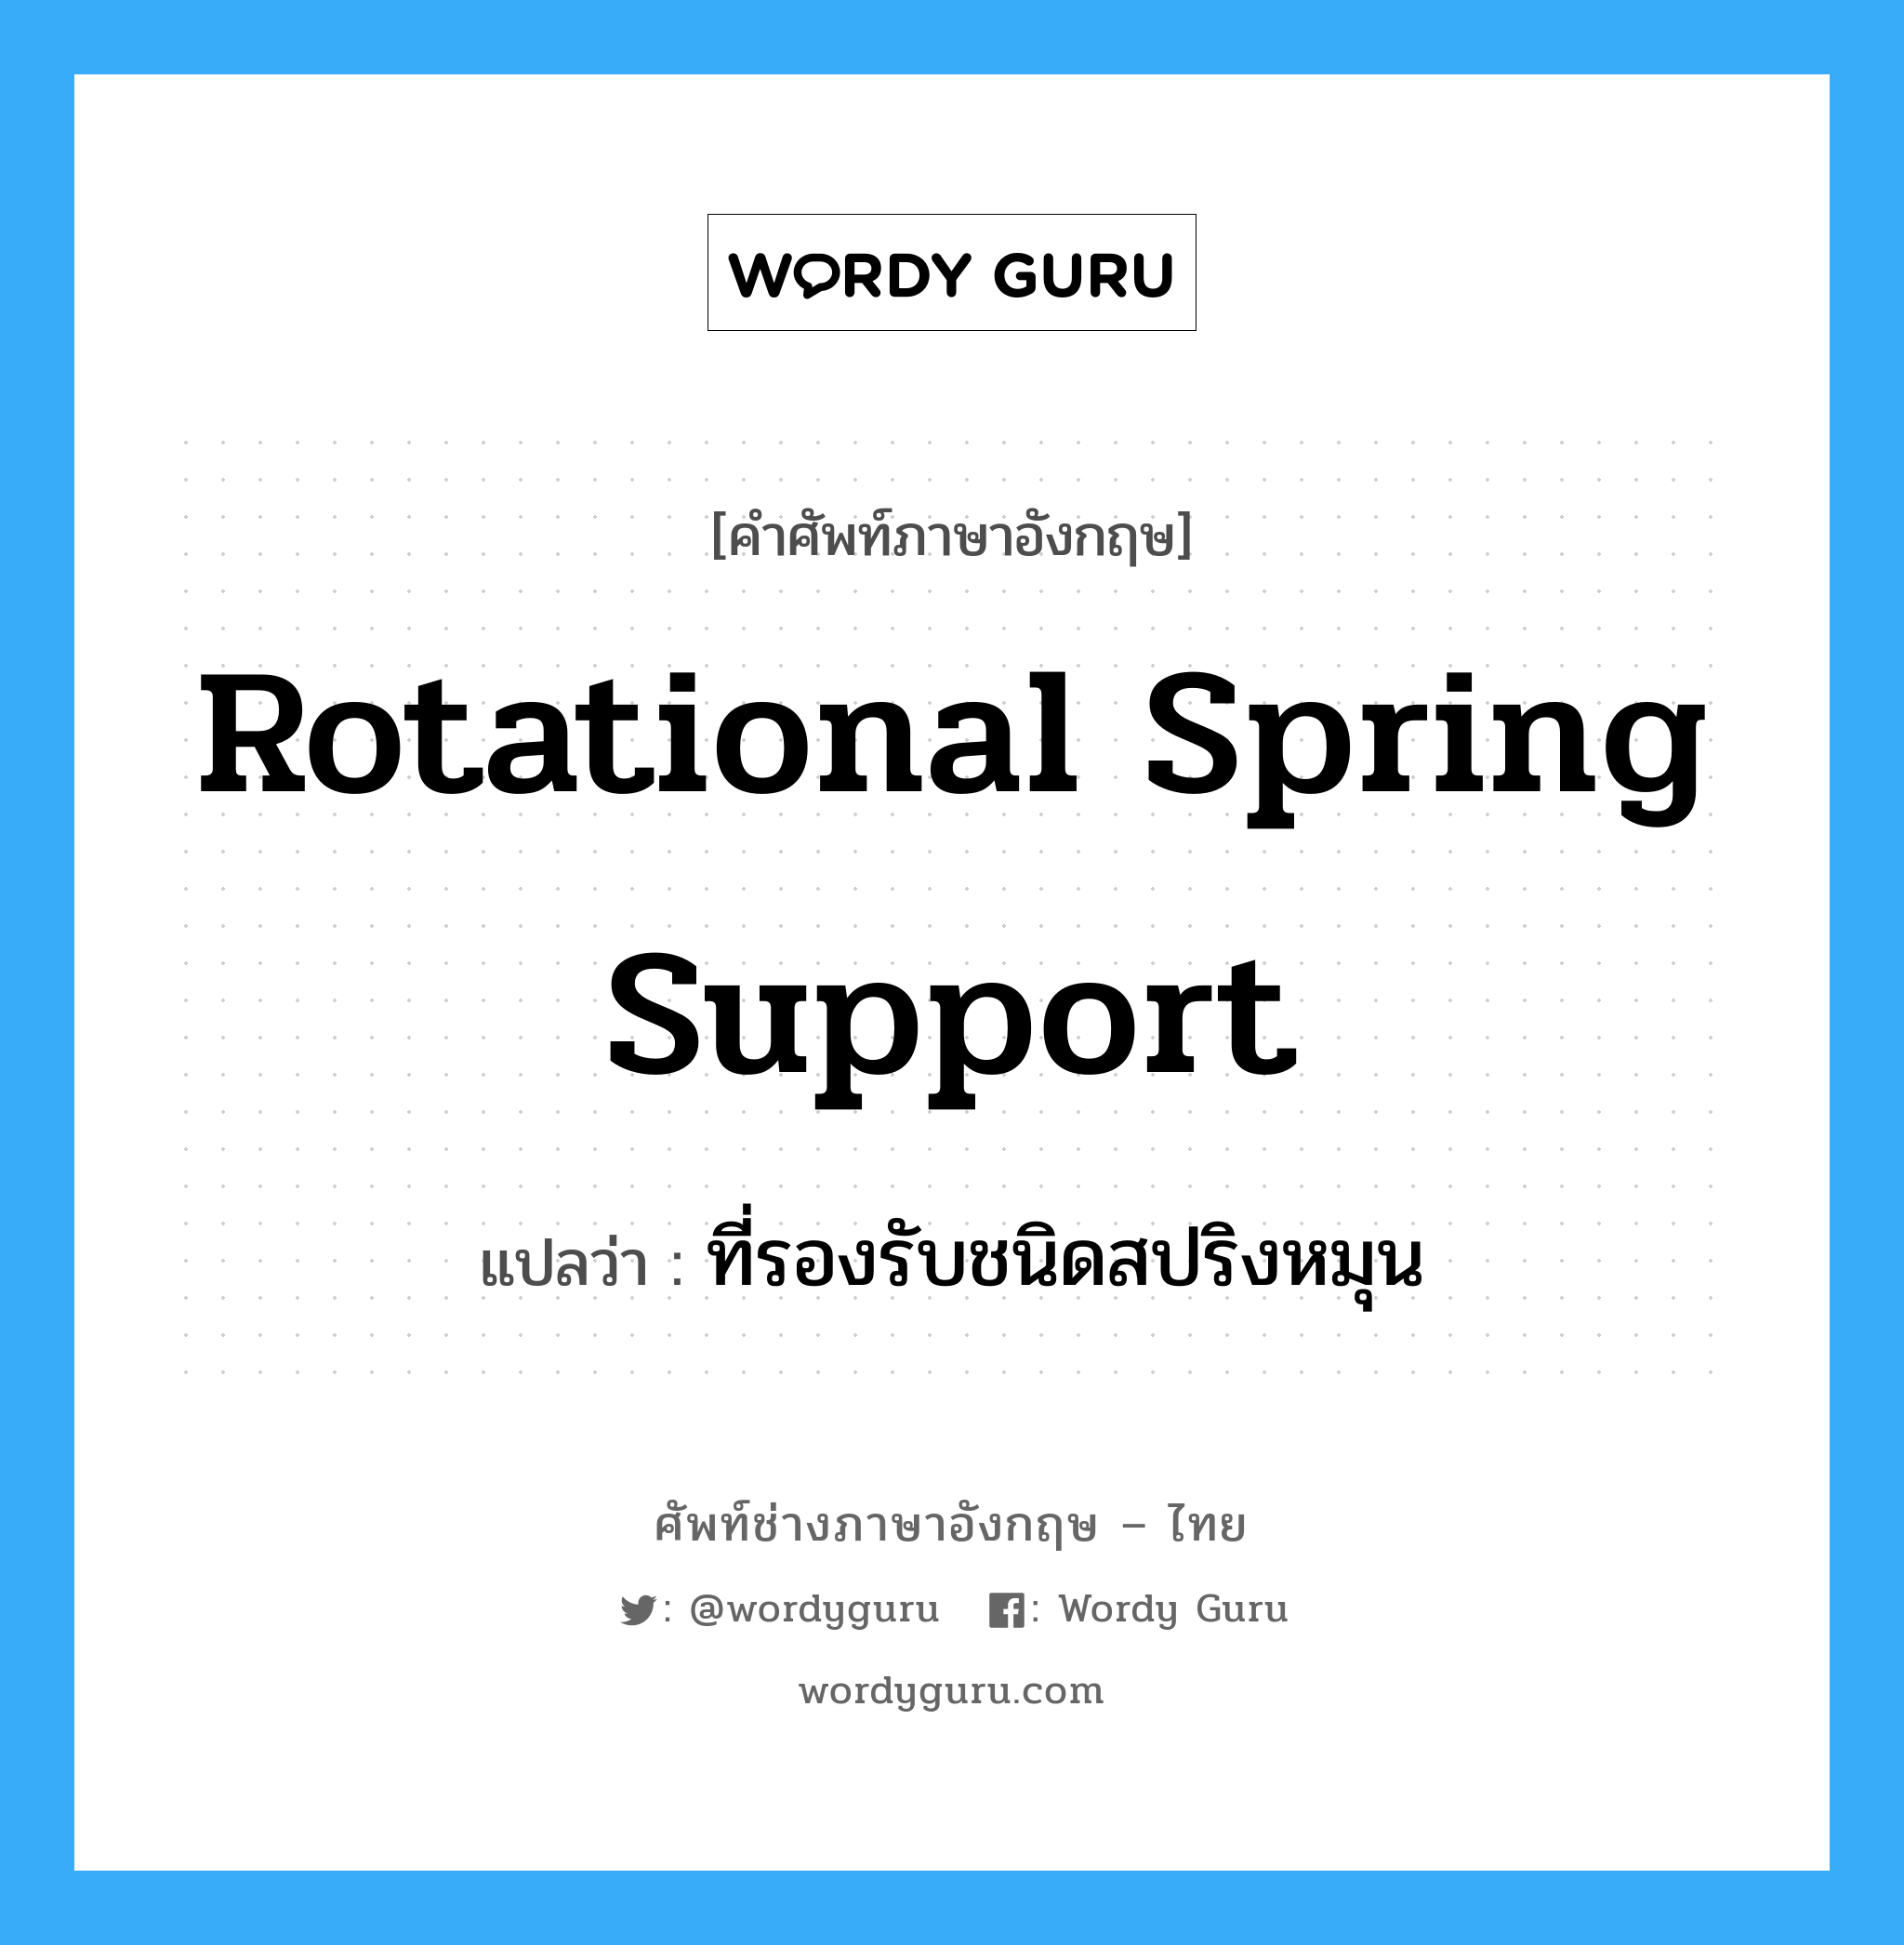 ที่รองรับชนิดสปริงหมุน ภาษาอังกฤษ?, คำศัพท์ช่างภาษาอังกฤษ - ไทย ที่รองรับชนิดสปริงหมุน คำศัพท์ภาษาอังกฤษ ที่รองรับชนิดสปริงหมุน แปลว่า rotational spring support